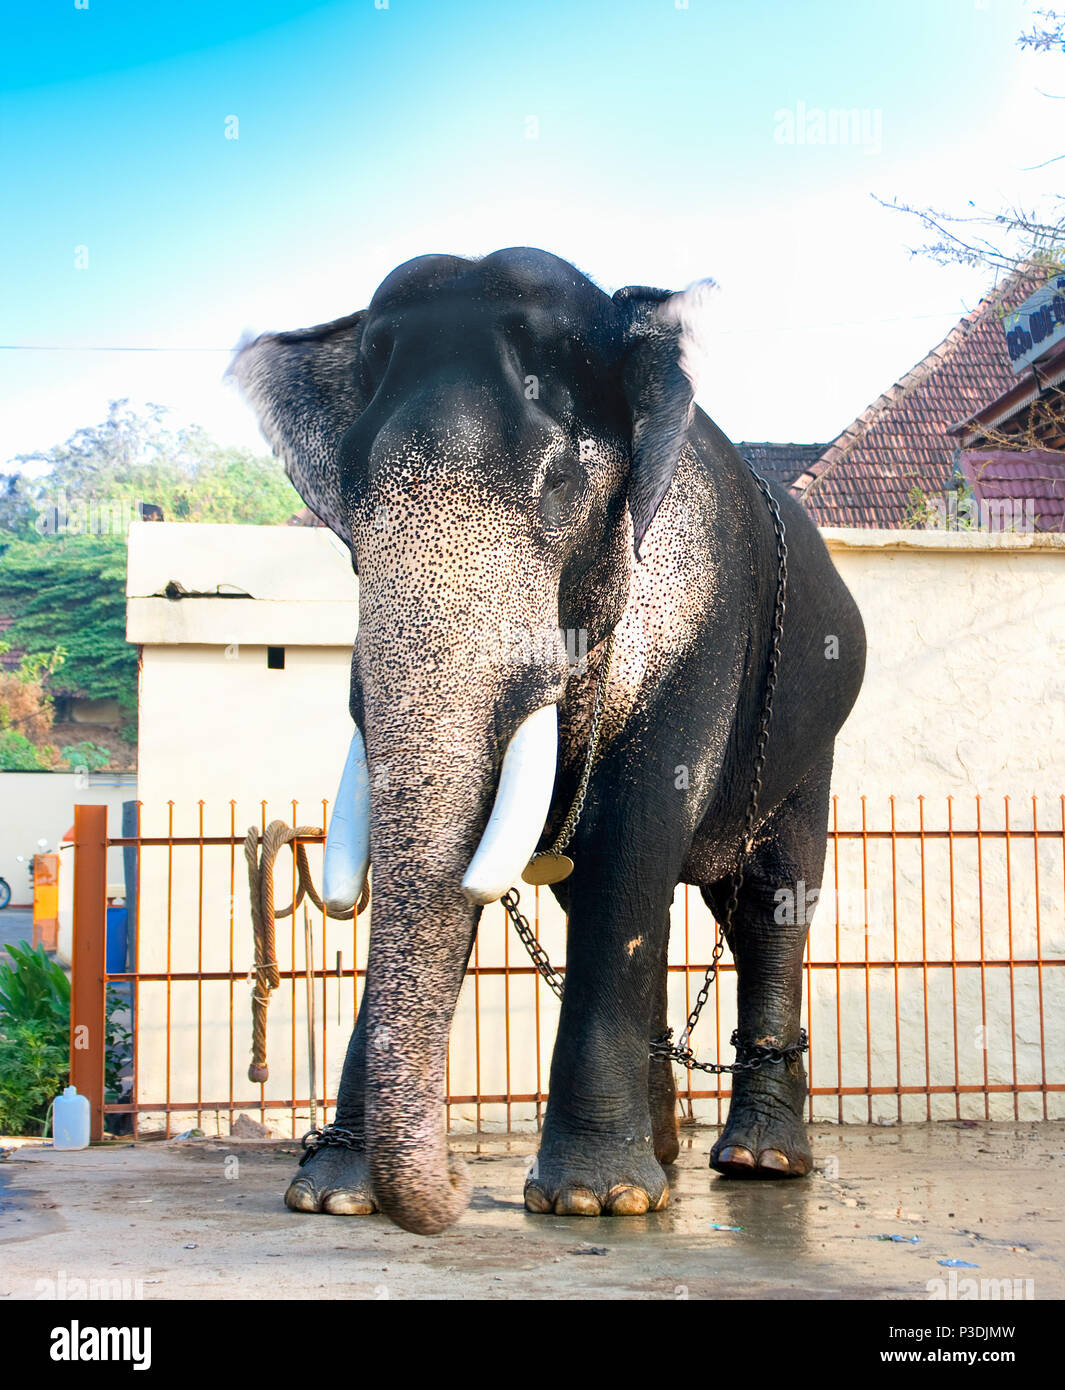 Magnifique éléphant indien géant debout près d'une maison, Kerala, Inde Banque D'Images